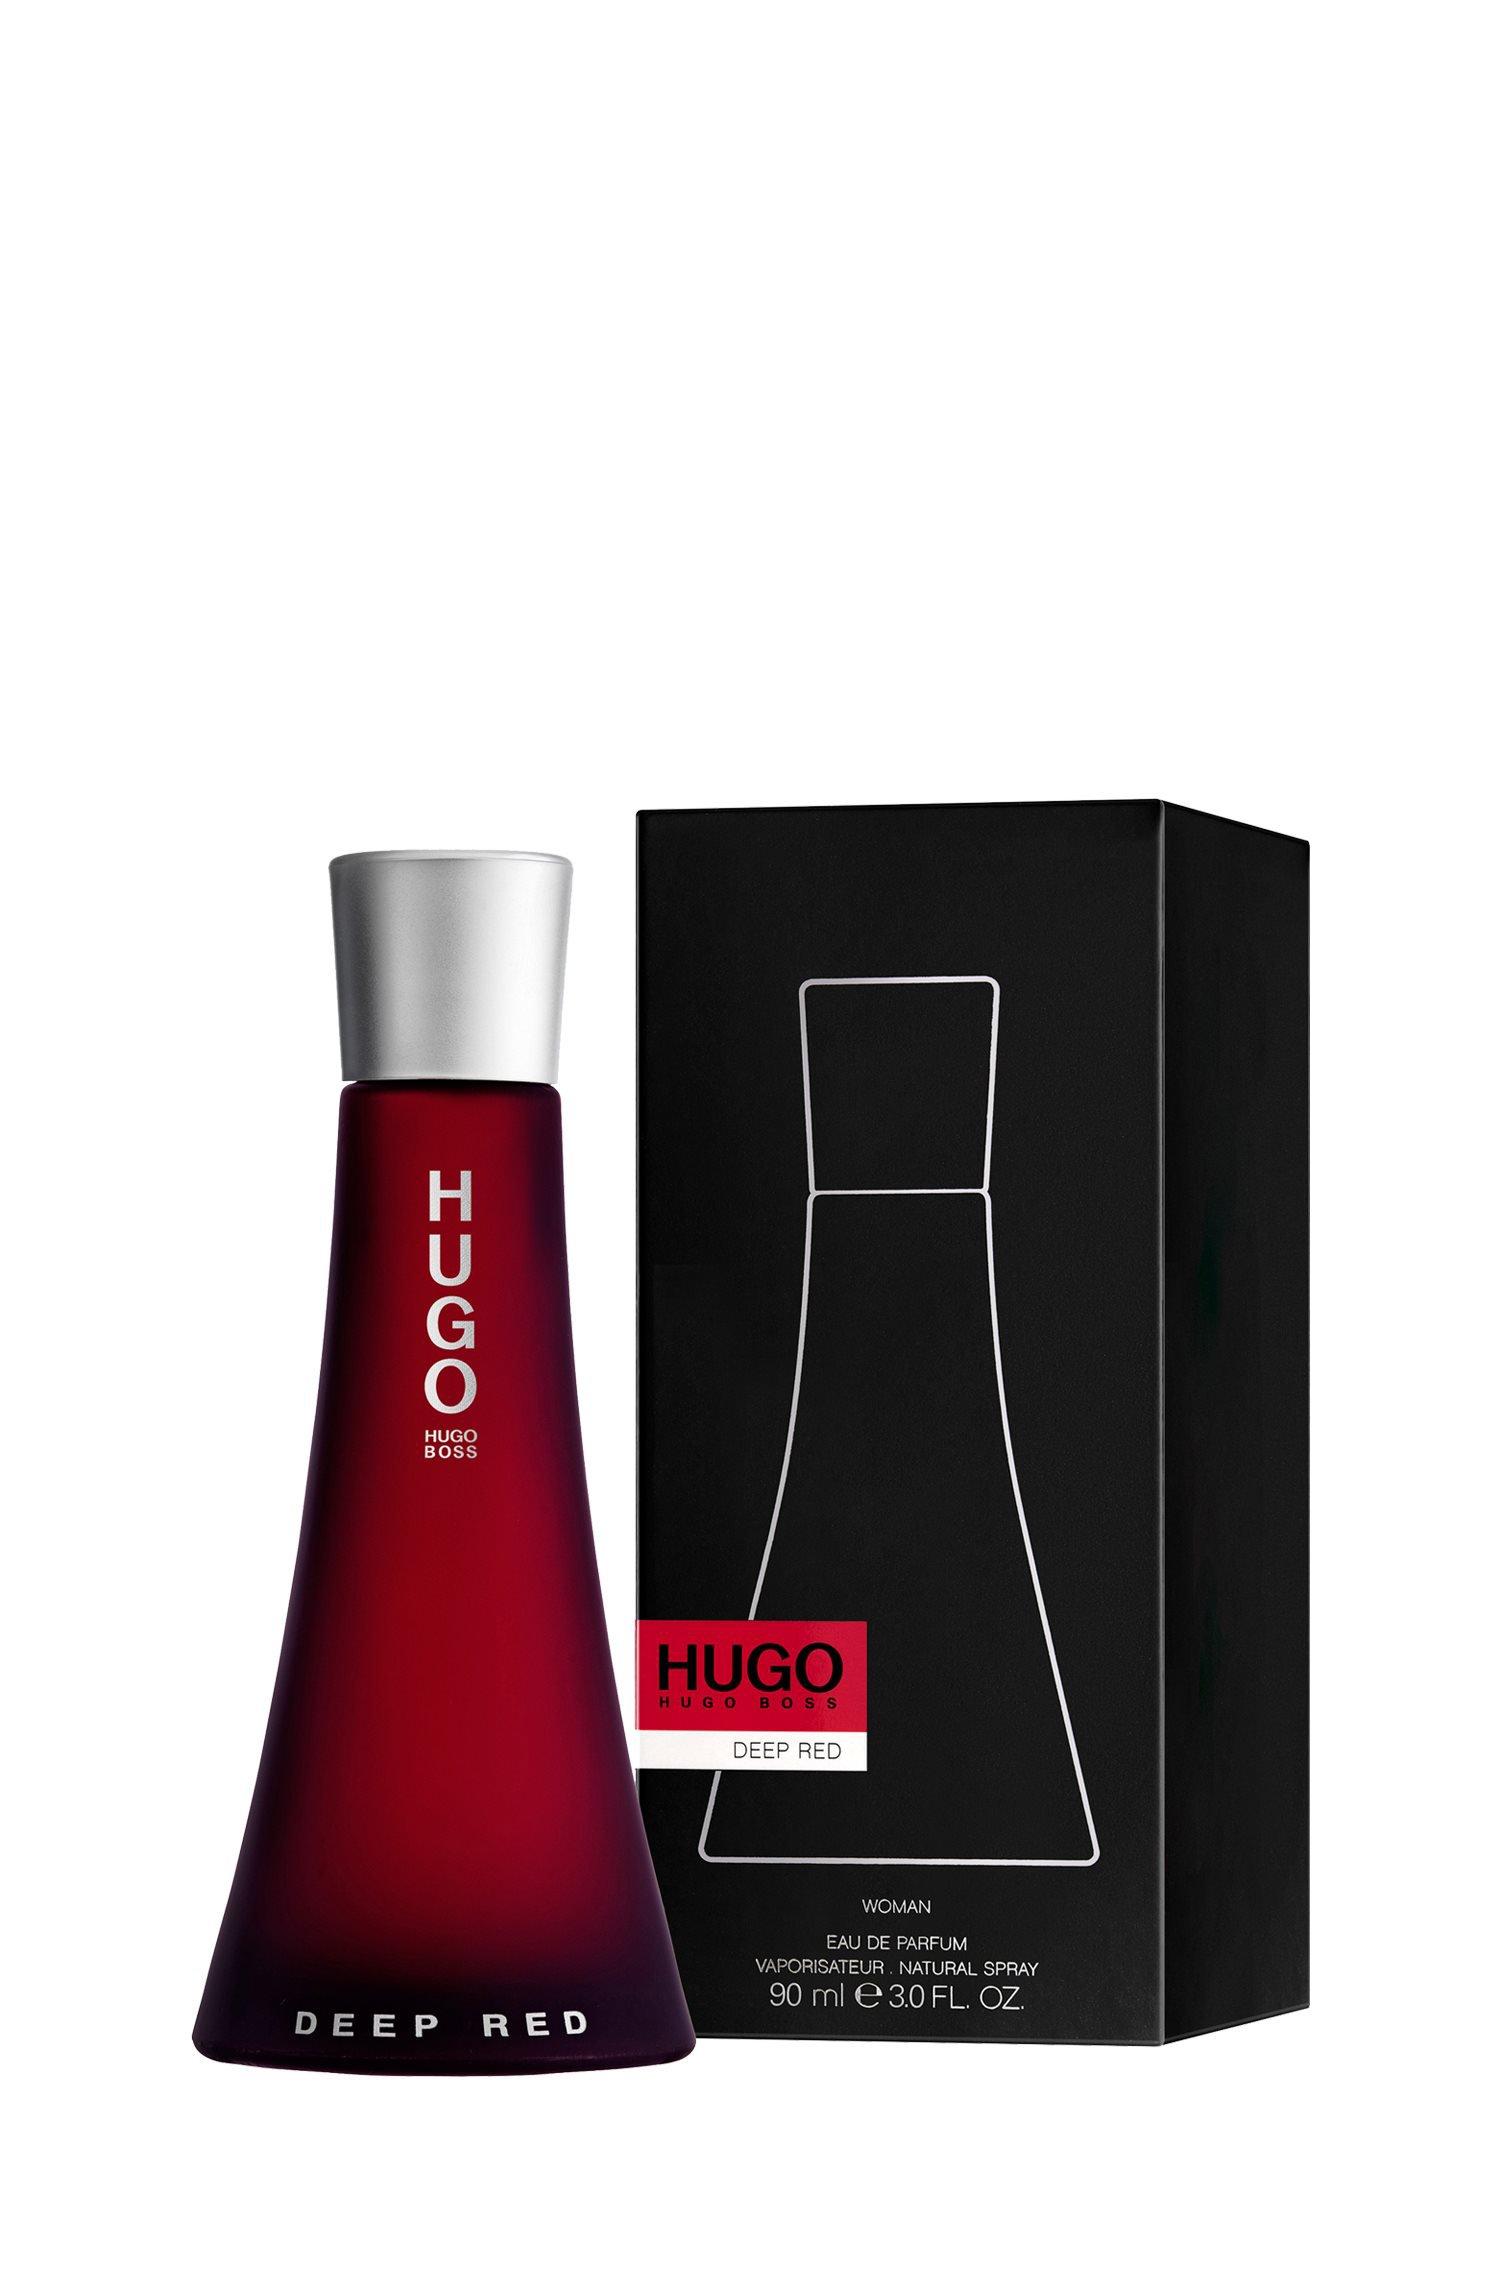 Selected image for HUGO BOSS Ženski parfem Deep Red 90ml